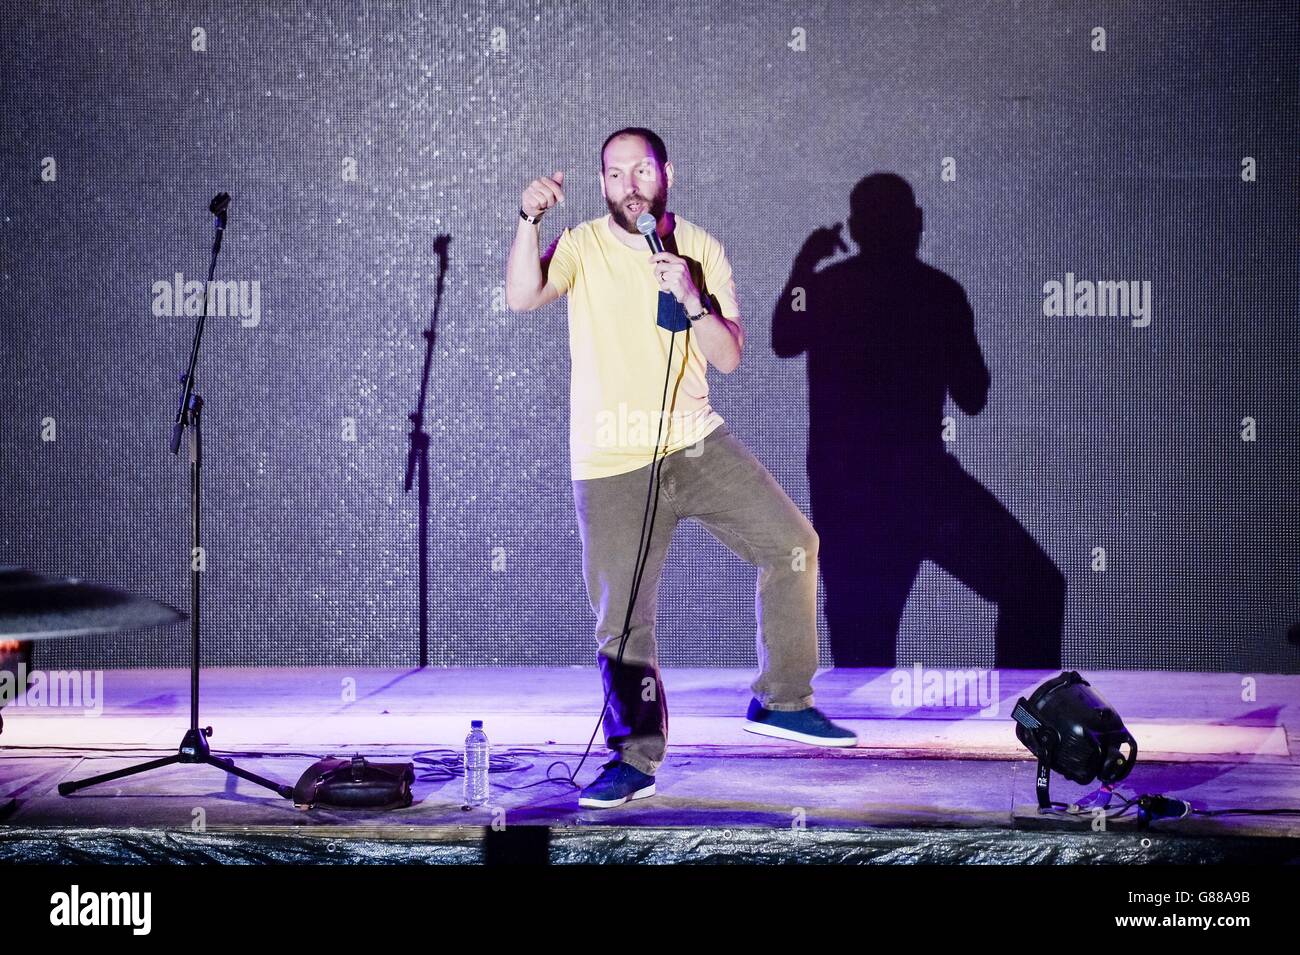 Il comico Adam Bloom si esibisce durante una serata di commedia al parco a tema Banksy's Dismaland di Weston-super-Mare. Foto Stock